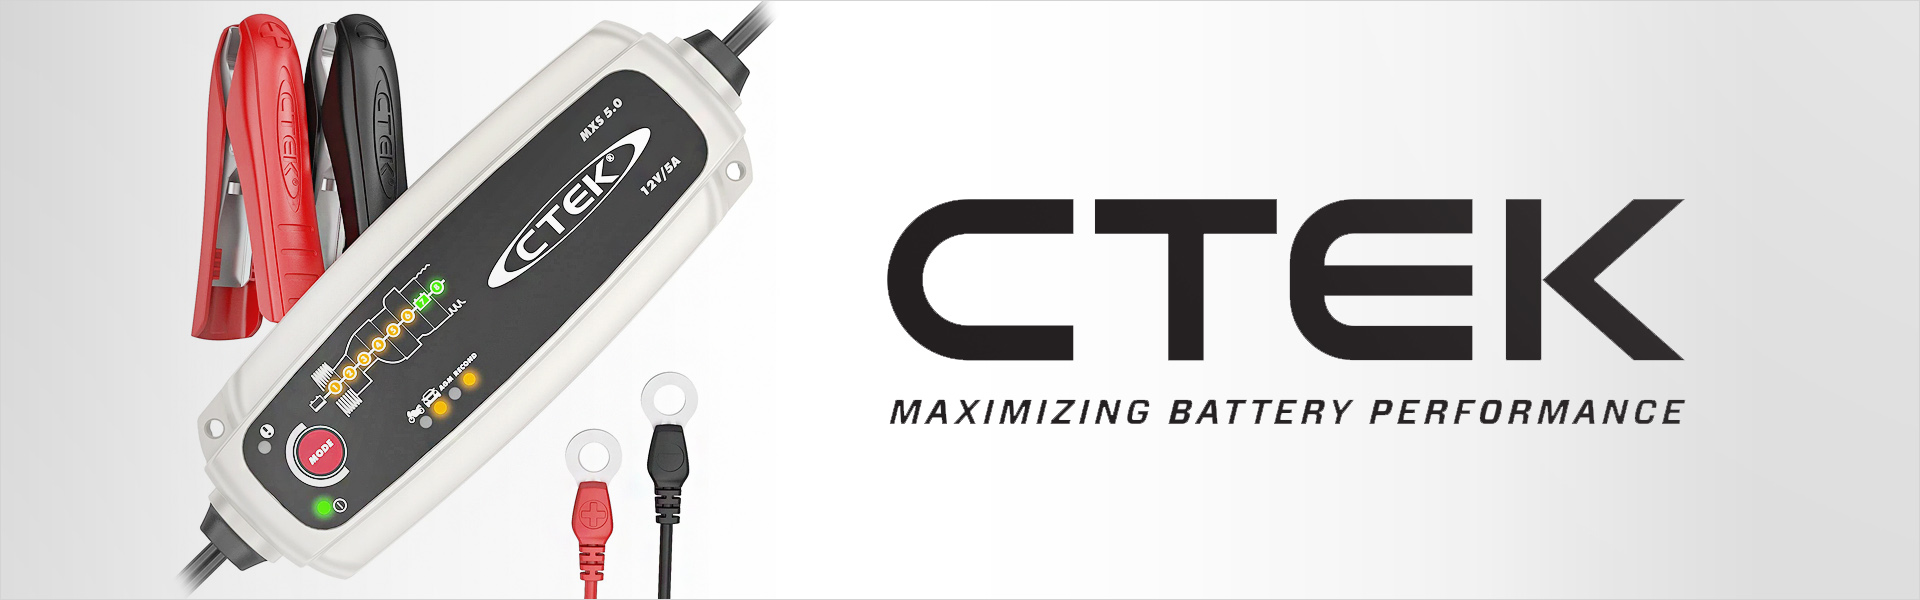 Зарядное устройство Ctek MXS 7.0 EU Ctek®